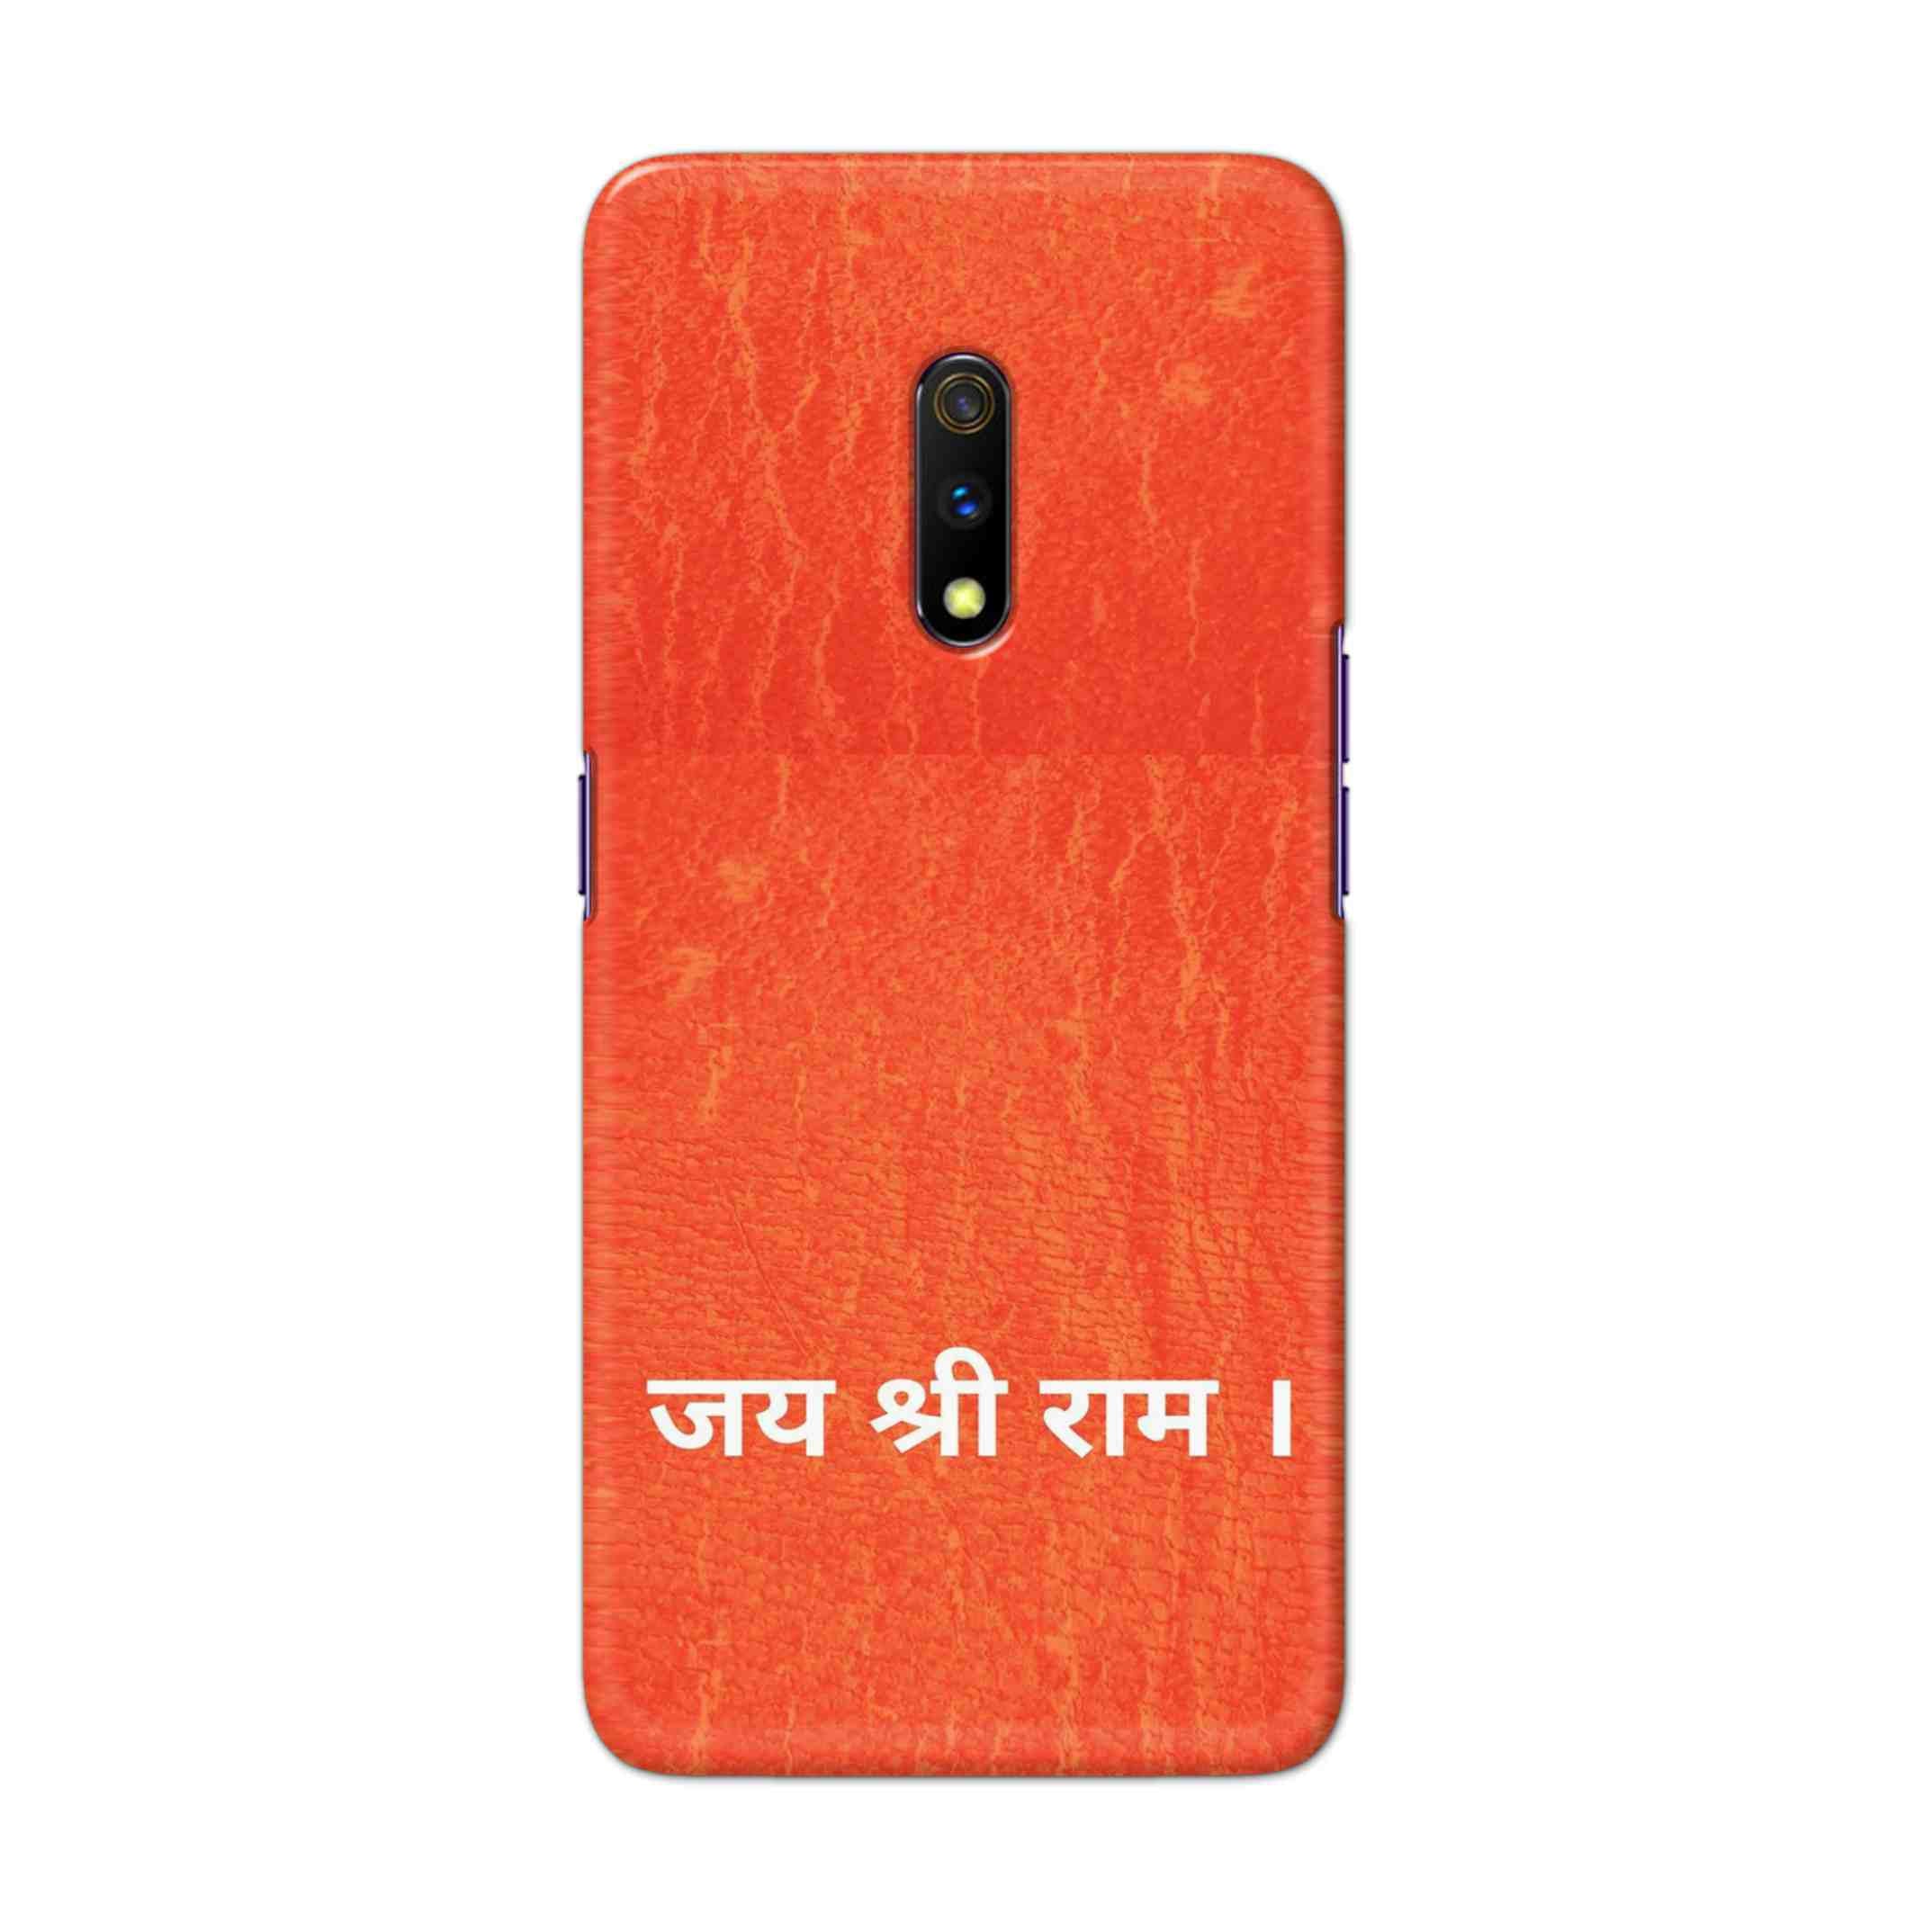 Buy Jai Shree Ram Hard Back Mobile Phone Case Cover For Oppo Realme X Online